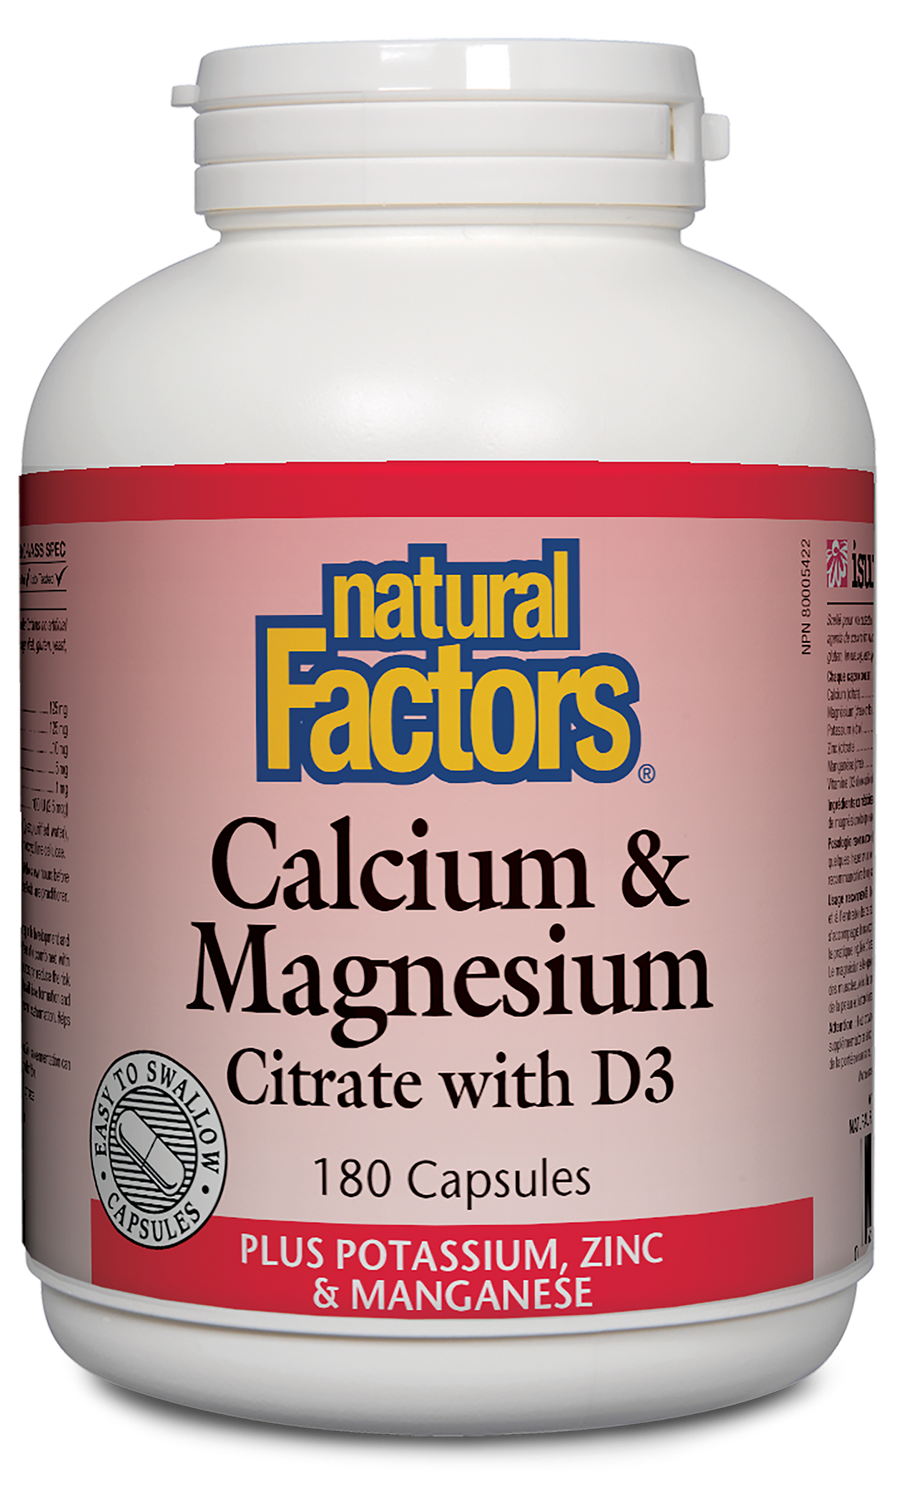 Natural Factors Calcium & Magnesium Citrate with D3 Plus Potassium, Zinc & Manganese Capsules